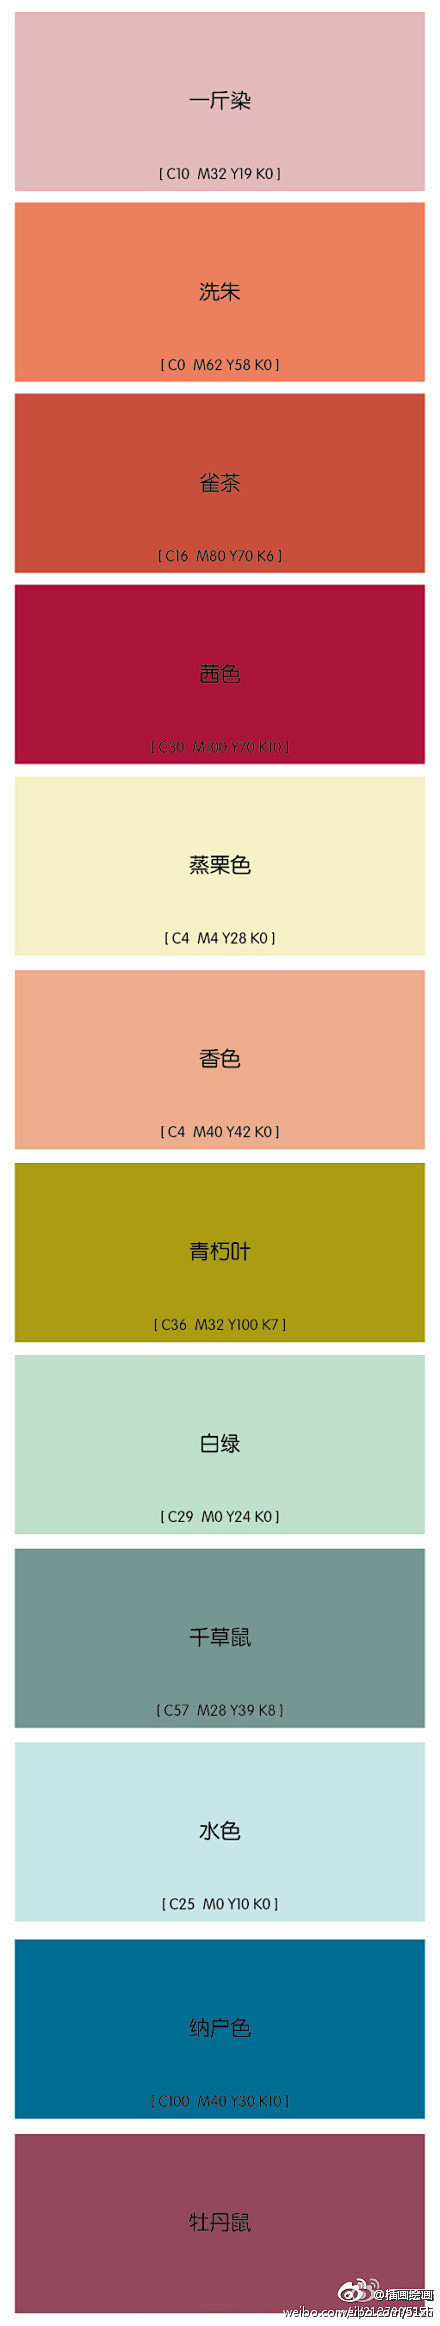 日本油墨公司DIC发售的《中国的传统色》...